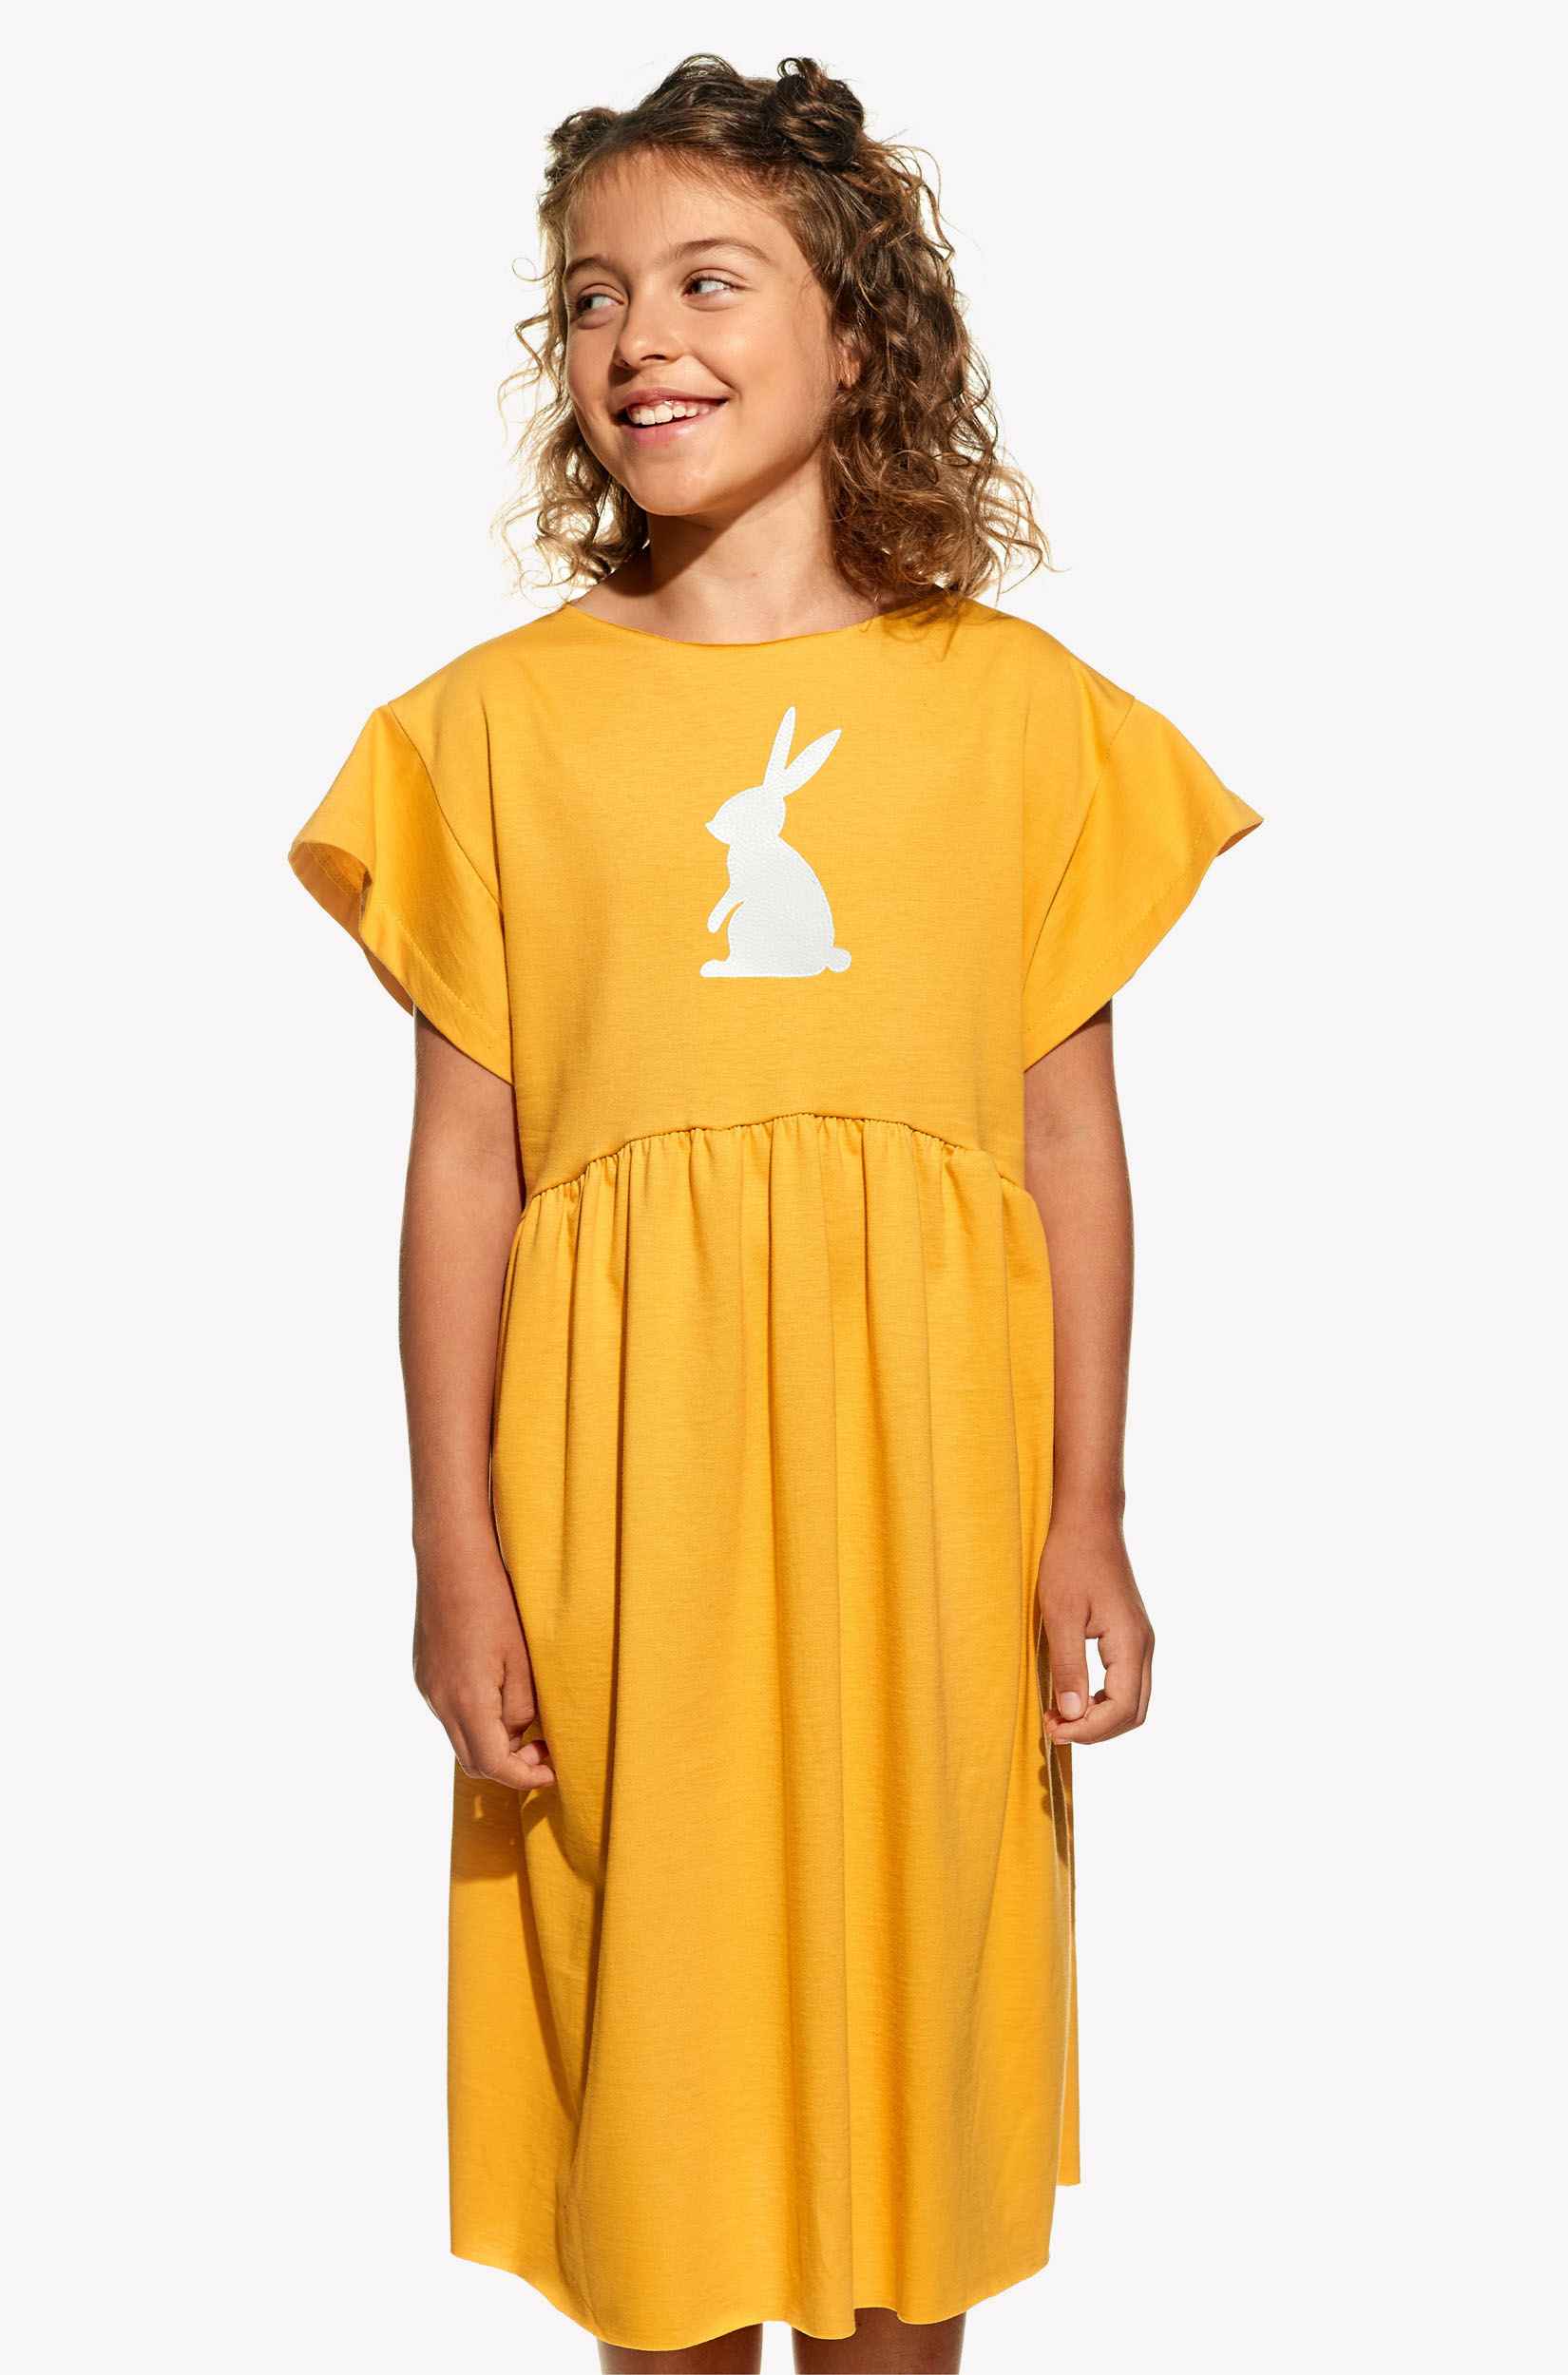 Dresses with rabbit